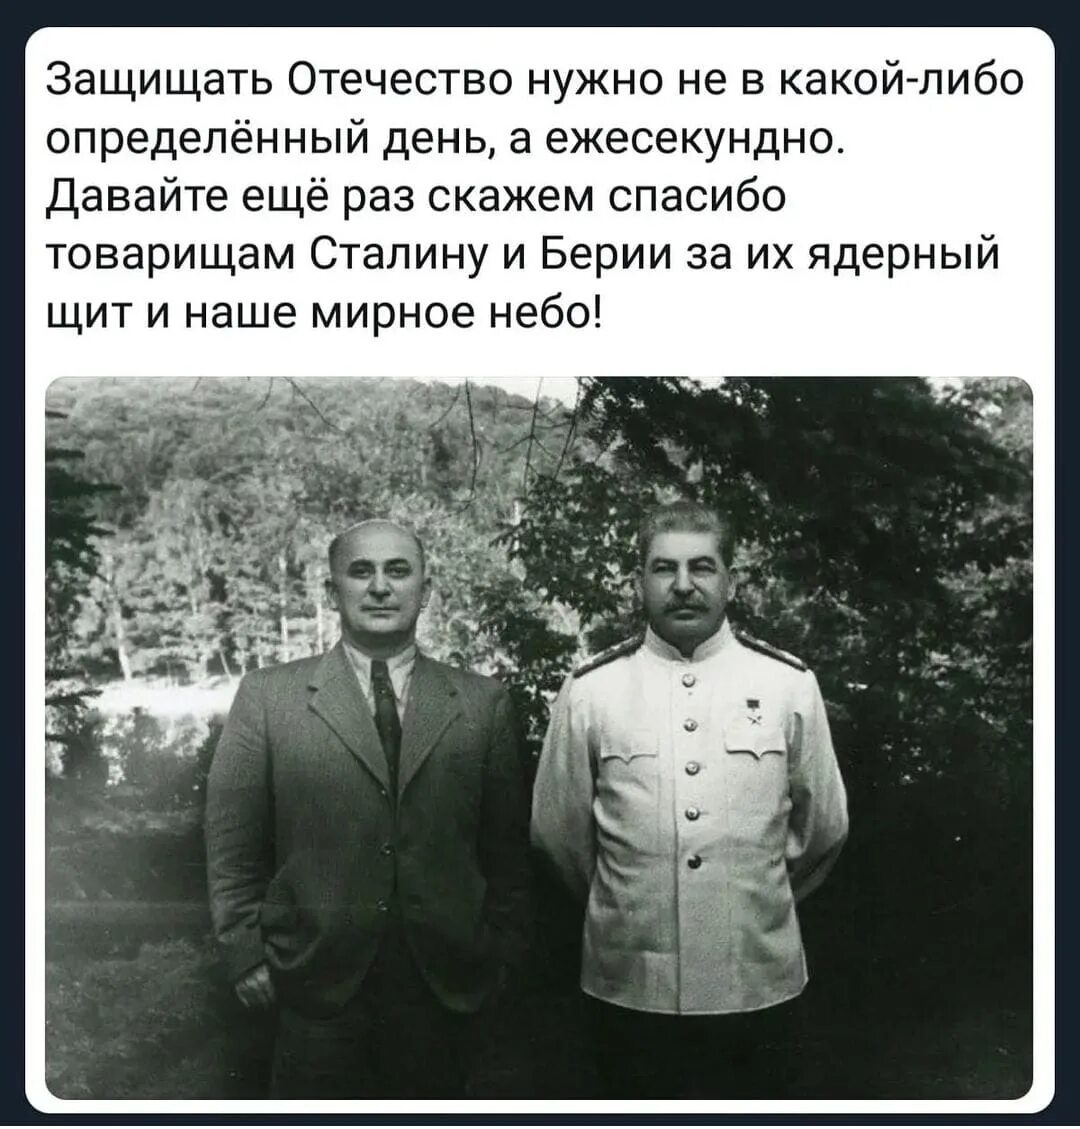 Анекдот про берию. Сталин и Берия. Сталин русский грузинского происхождения. Сталин я русский человек грузинской национальности. Сталинский ядерный щит.